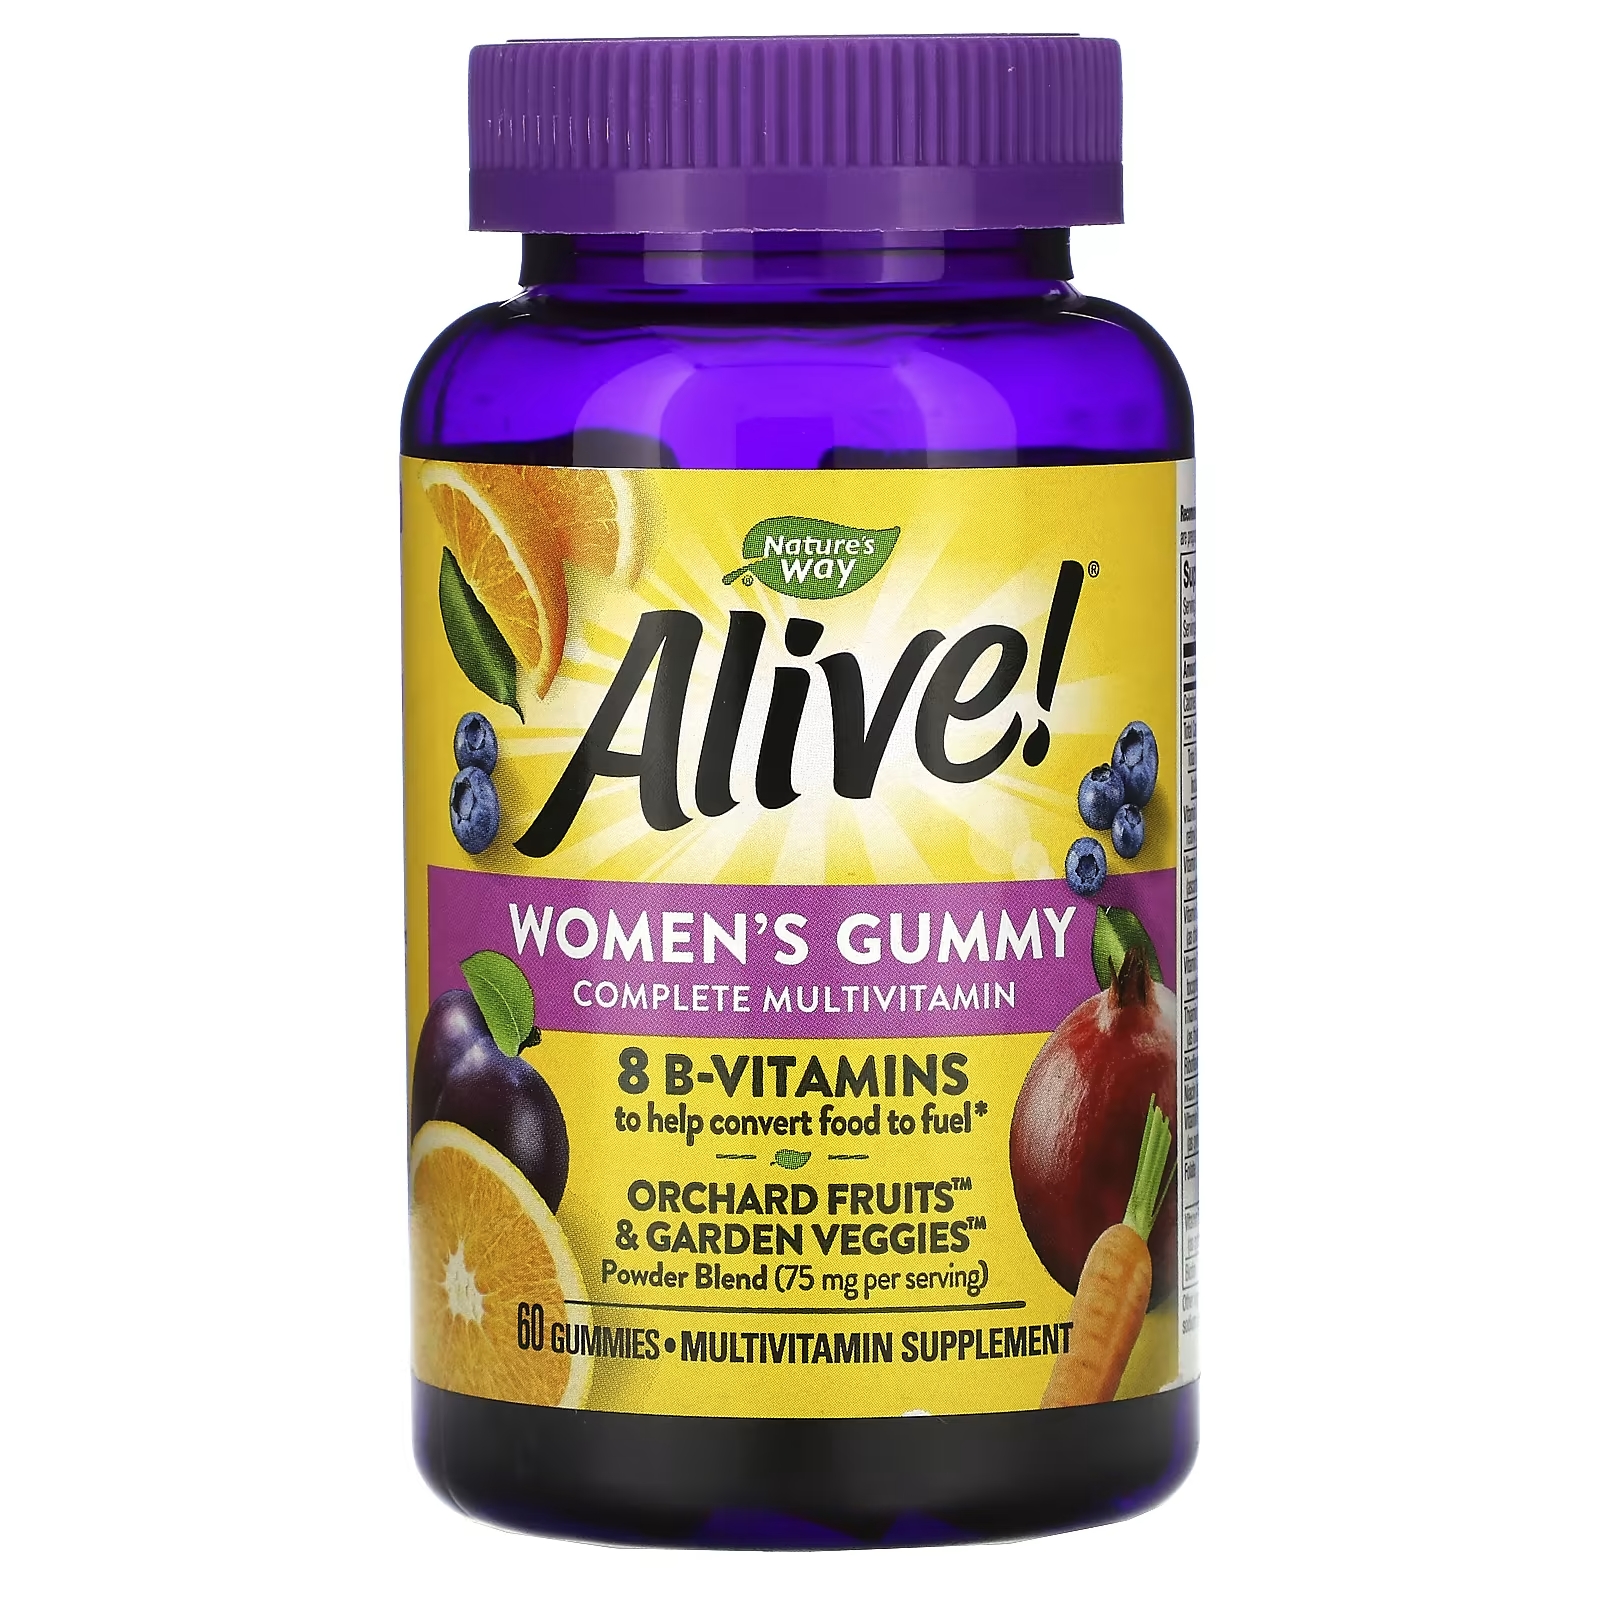 Мультивитаминный Комплекс для Женщин Nature's Way Alive, ягодный вкус, 60 жевательных таблеток california gold nutrition мультивитаминный комплекс для женщин ягодный и фруктовый вкус 90 жевательных конфет